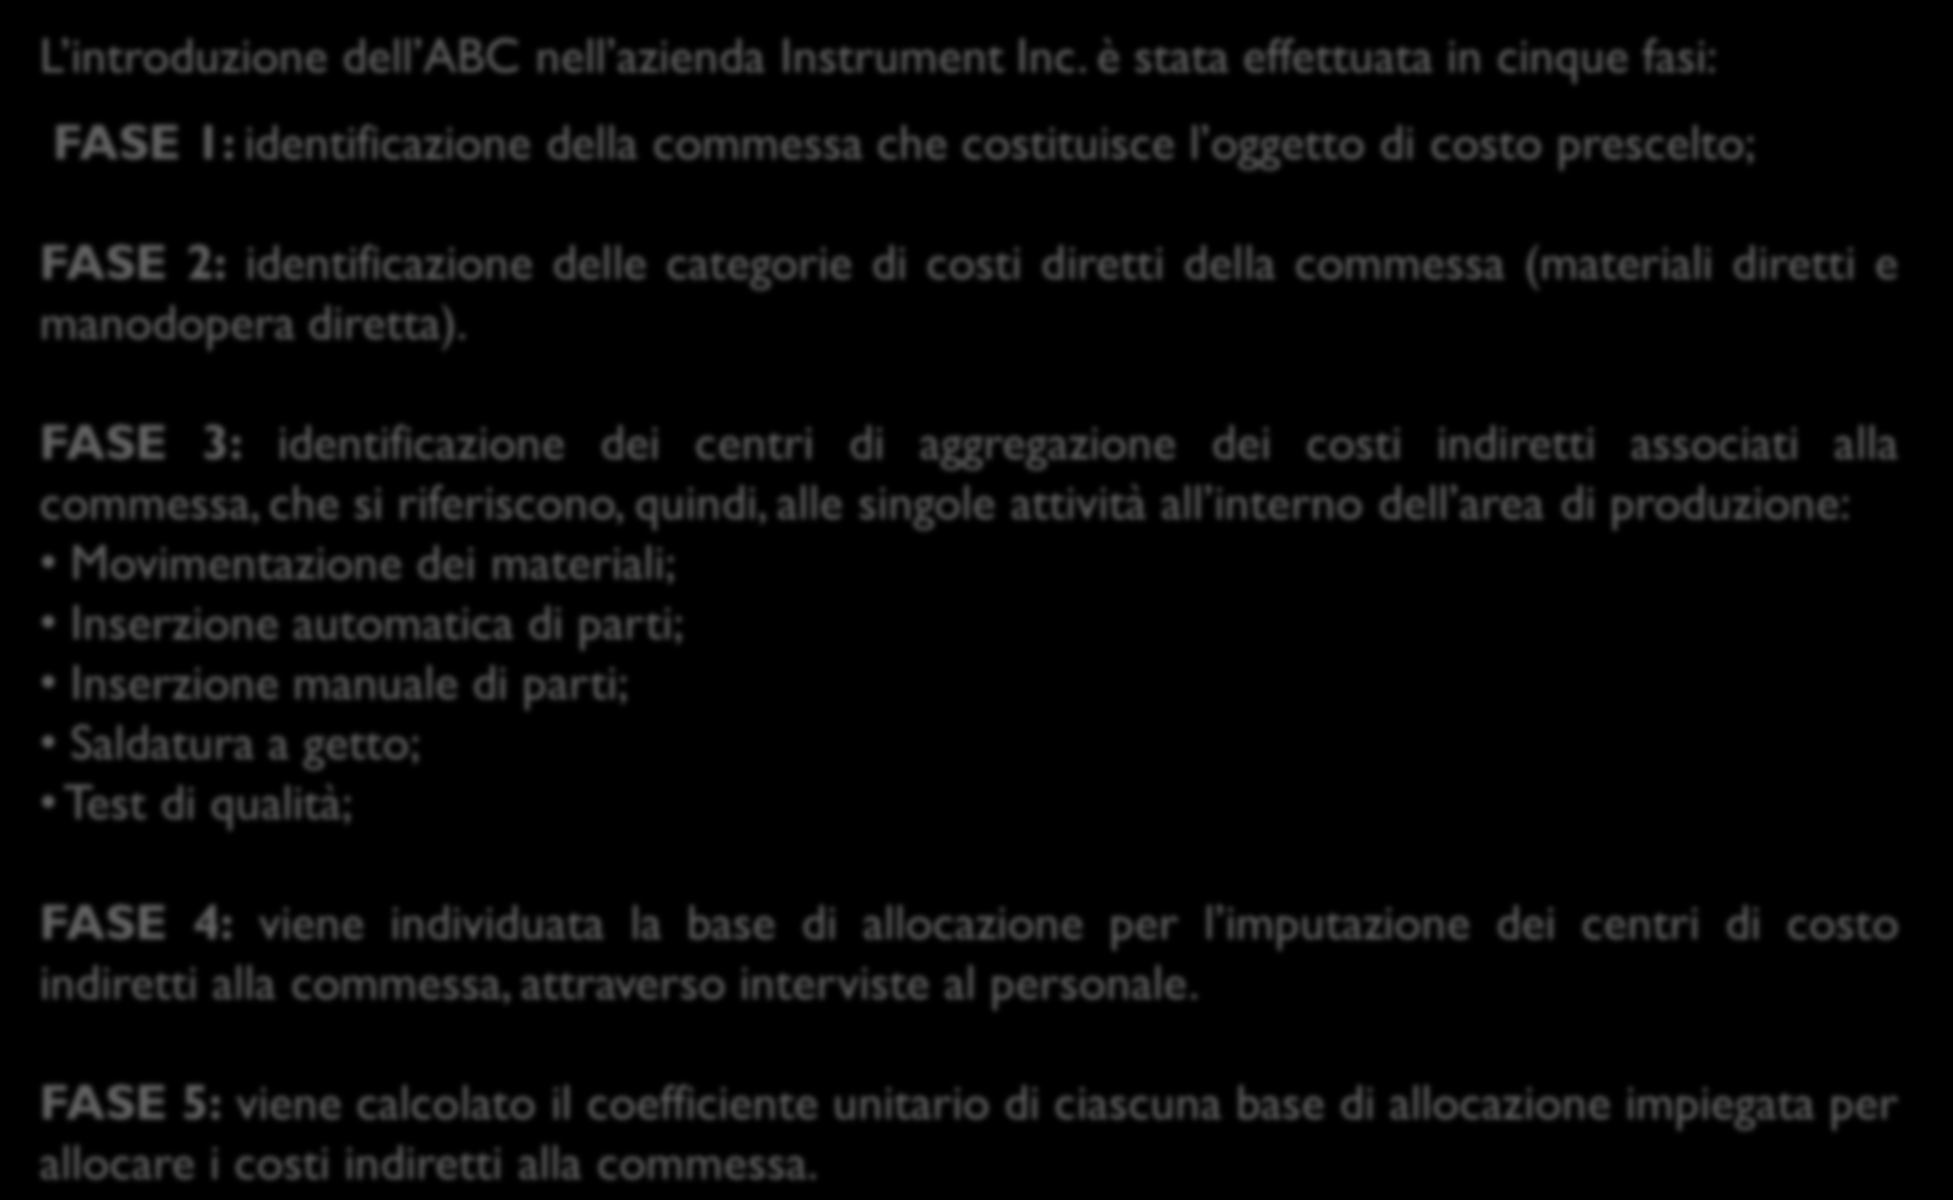 L applicazione dell ABC in un azienda produttrice di strumentazione elettronica: il caso Instrument L introduzione dell ABC nell azienda Instrument Inc.